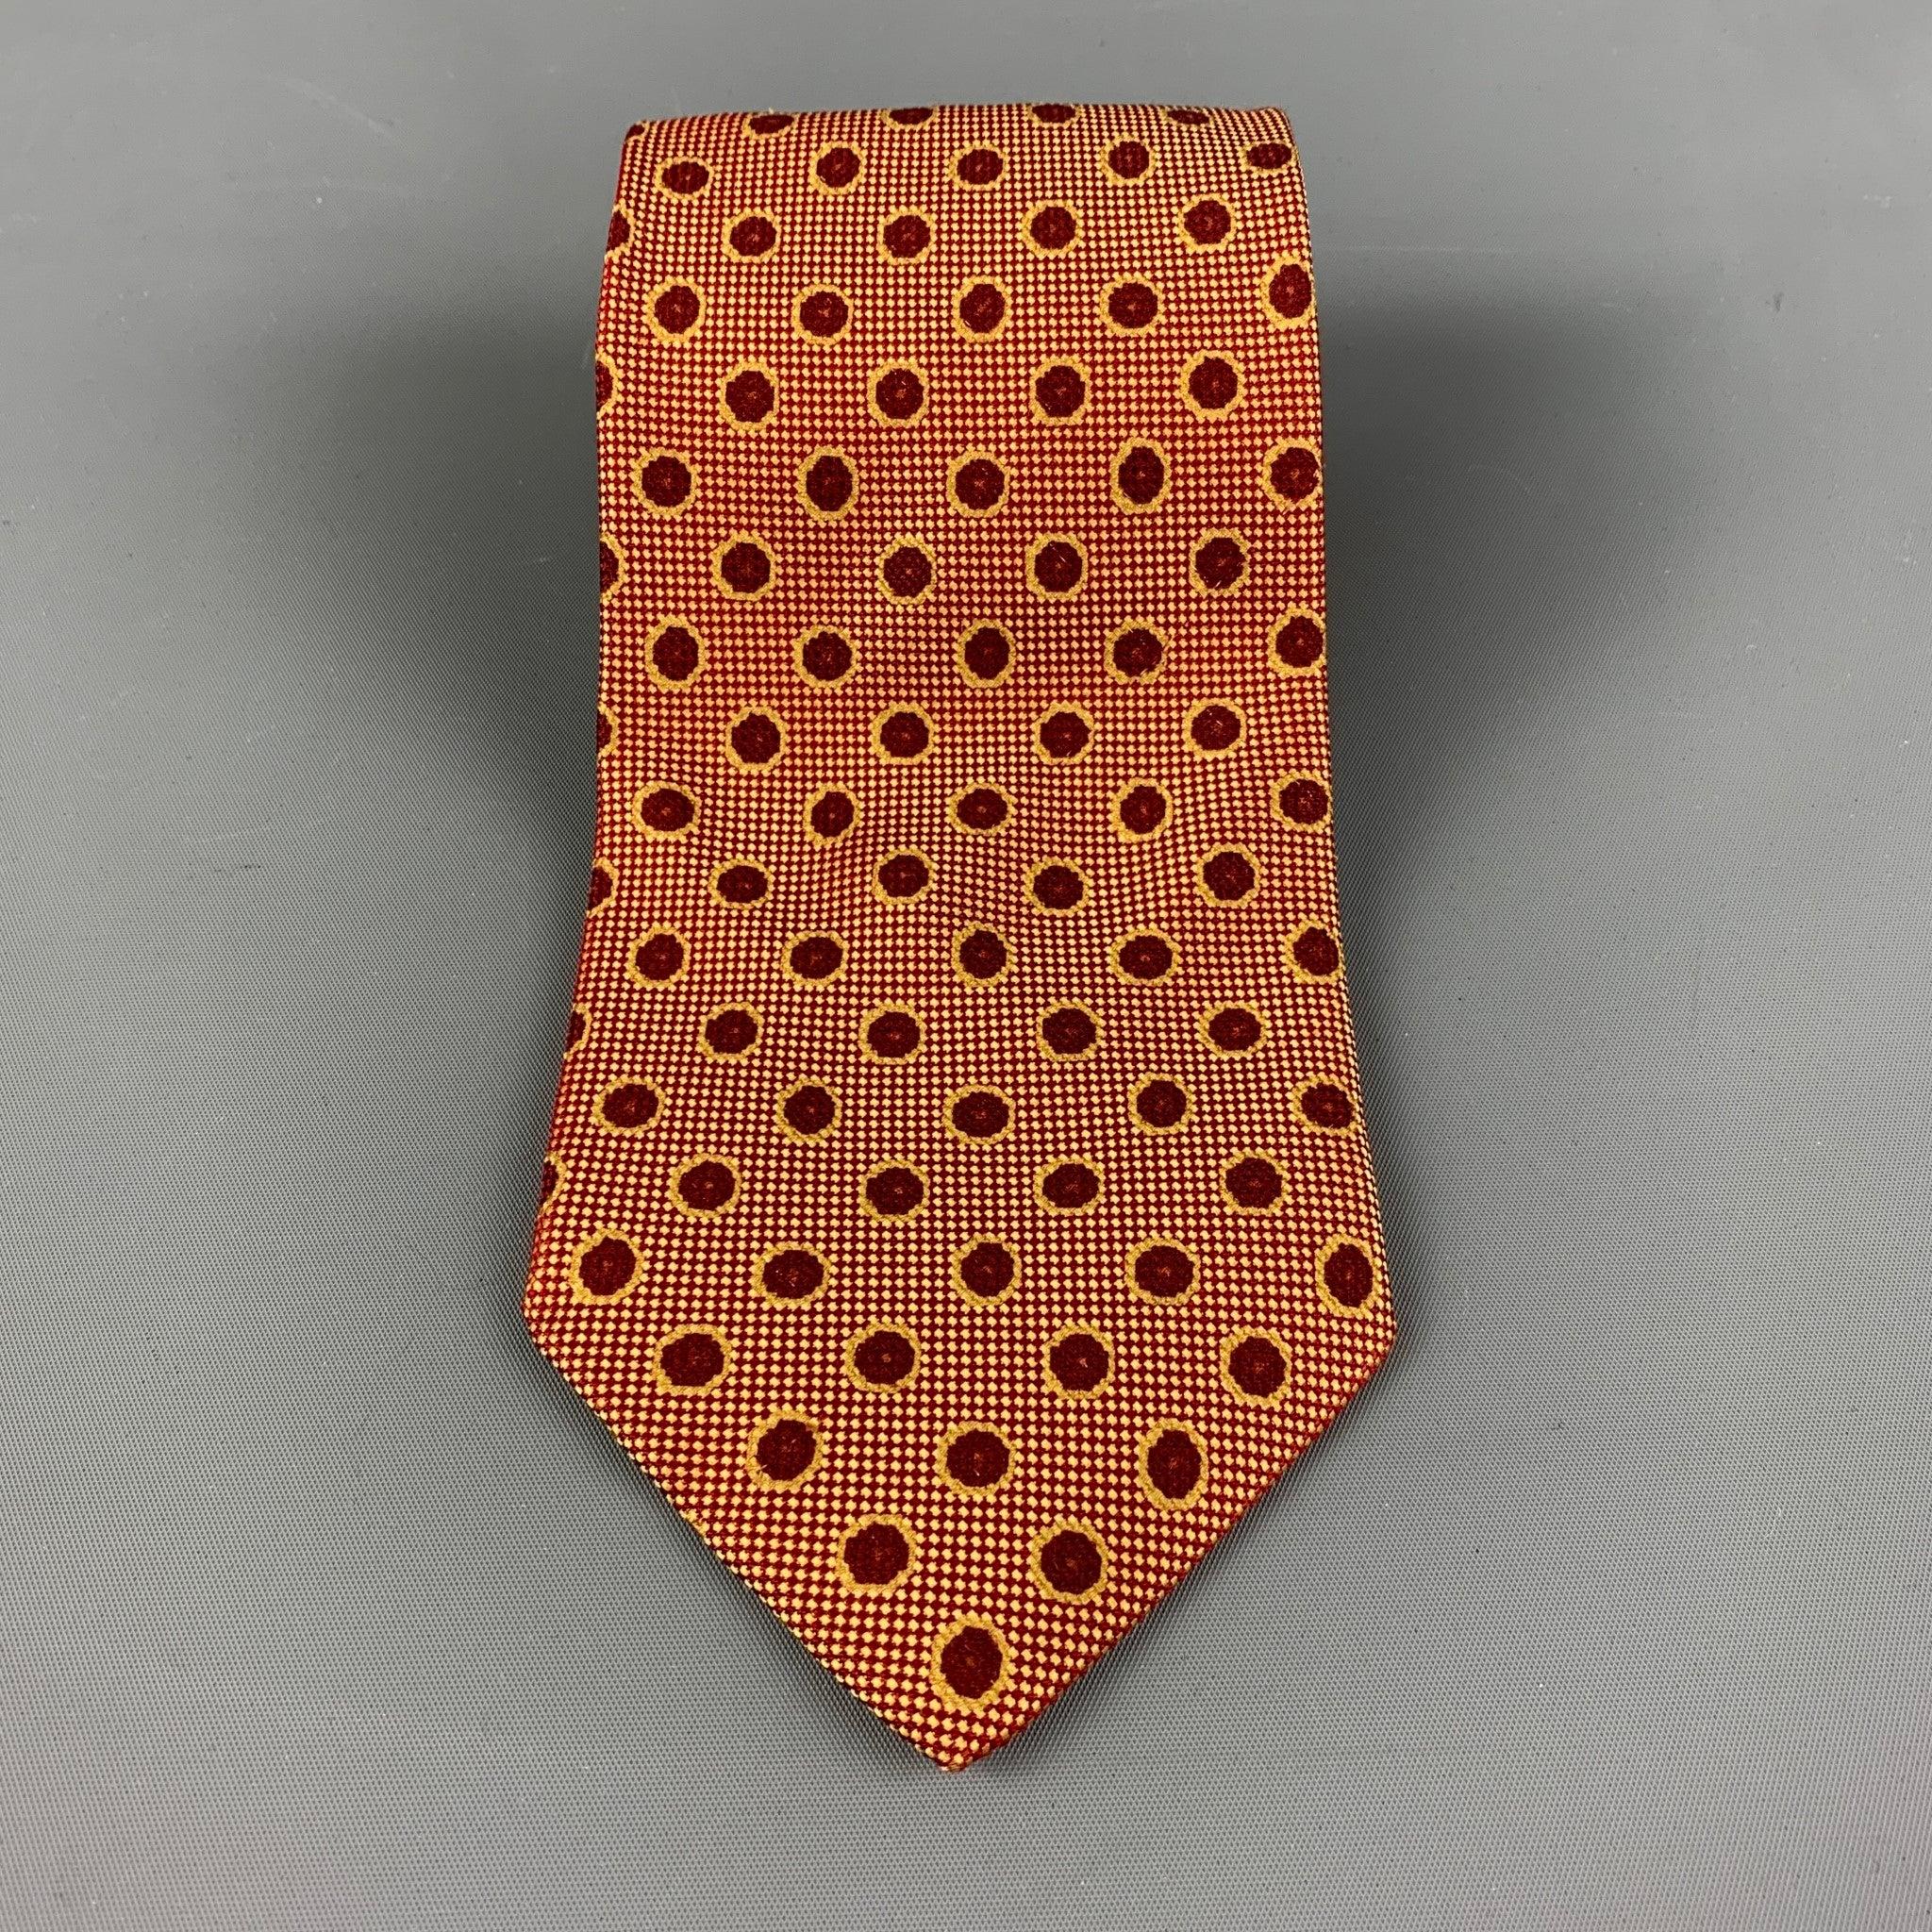 ERMENEGILDO ZEGNA Krawatte in einem rot-gelb gepunkteten Stil mit schillerndem Glanz. 100% Seide. Hergestellt in Italien.
Sehr guter gebrauchter Zustand.
 

Abmessungen: 
  
Breite:3,5 Zoll 
Länge:56 in




  
  
 
Sui Generis-Referenz: